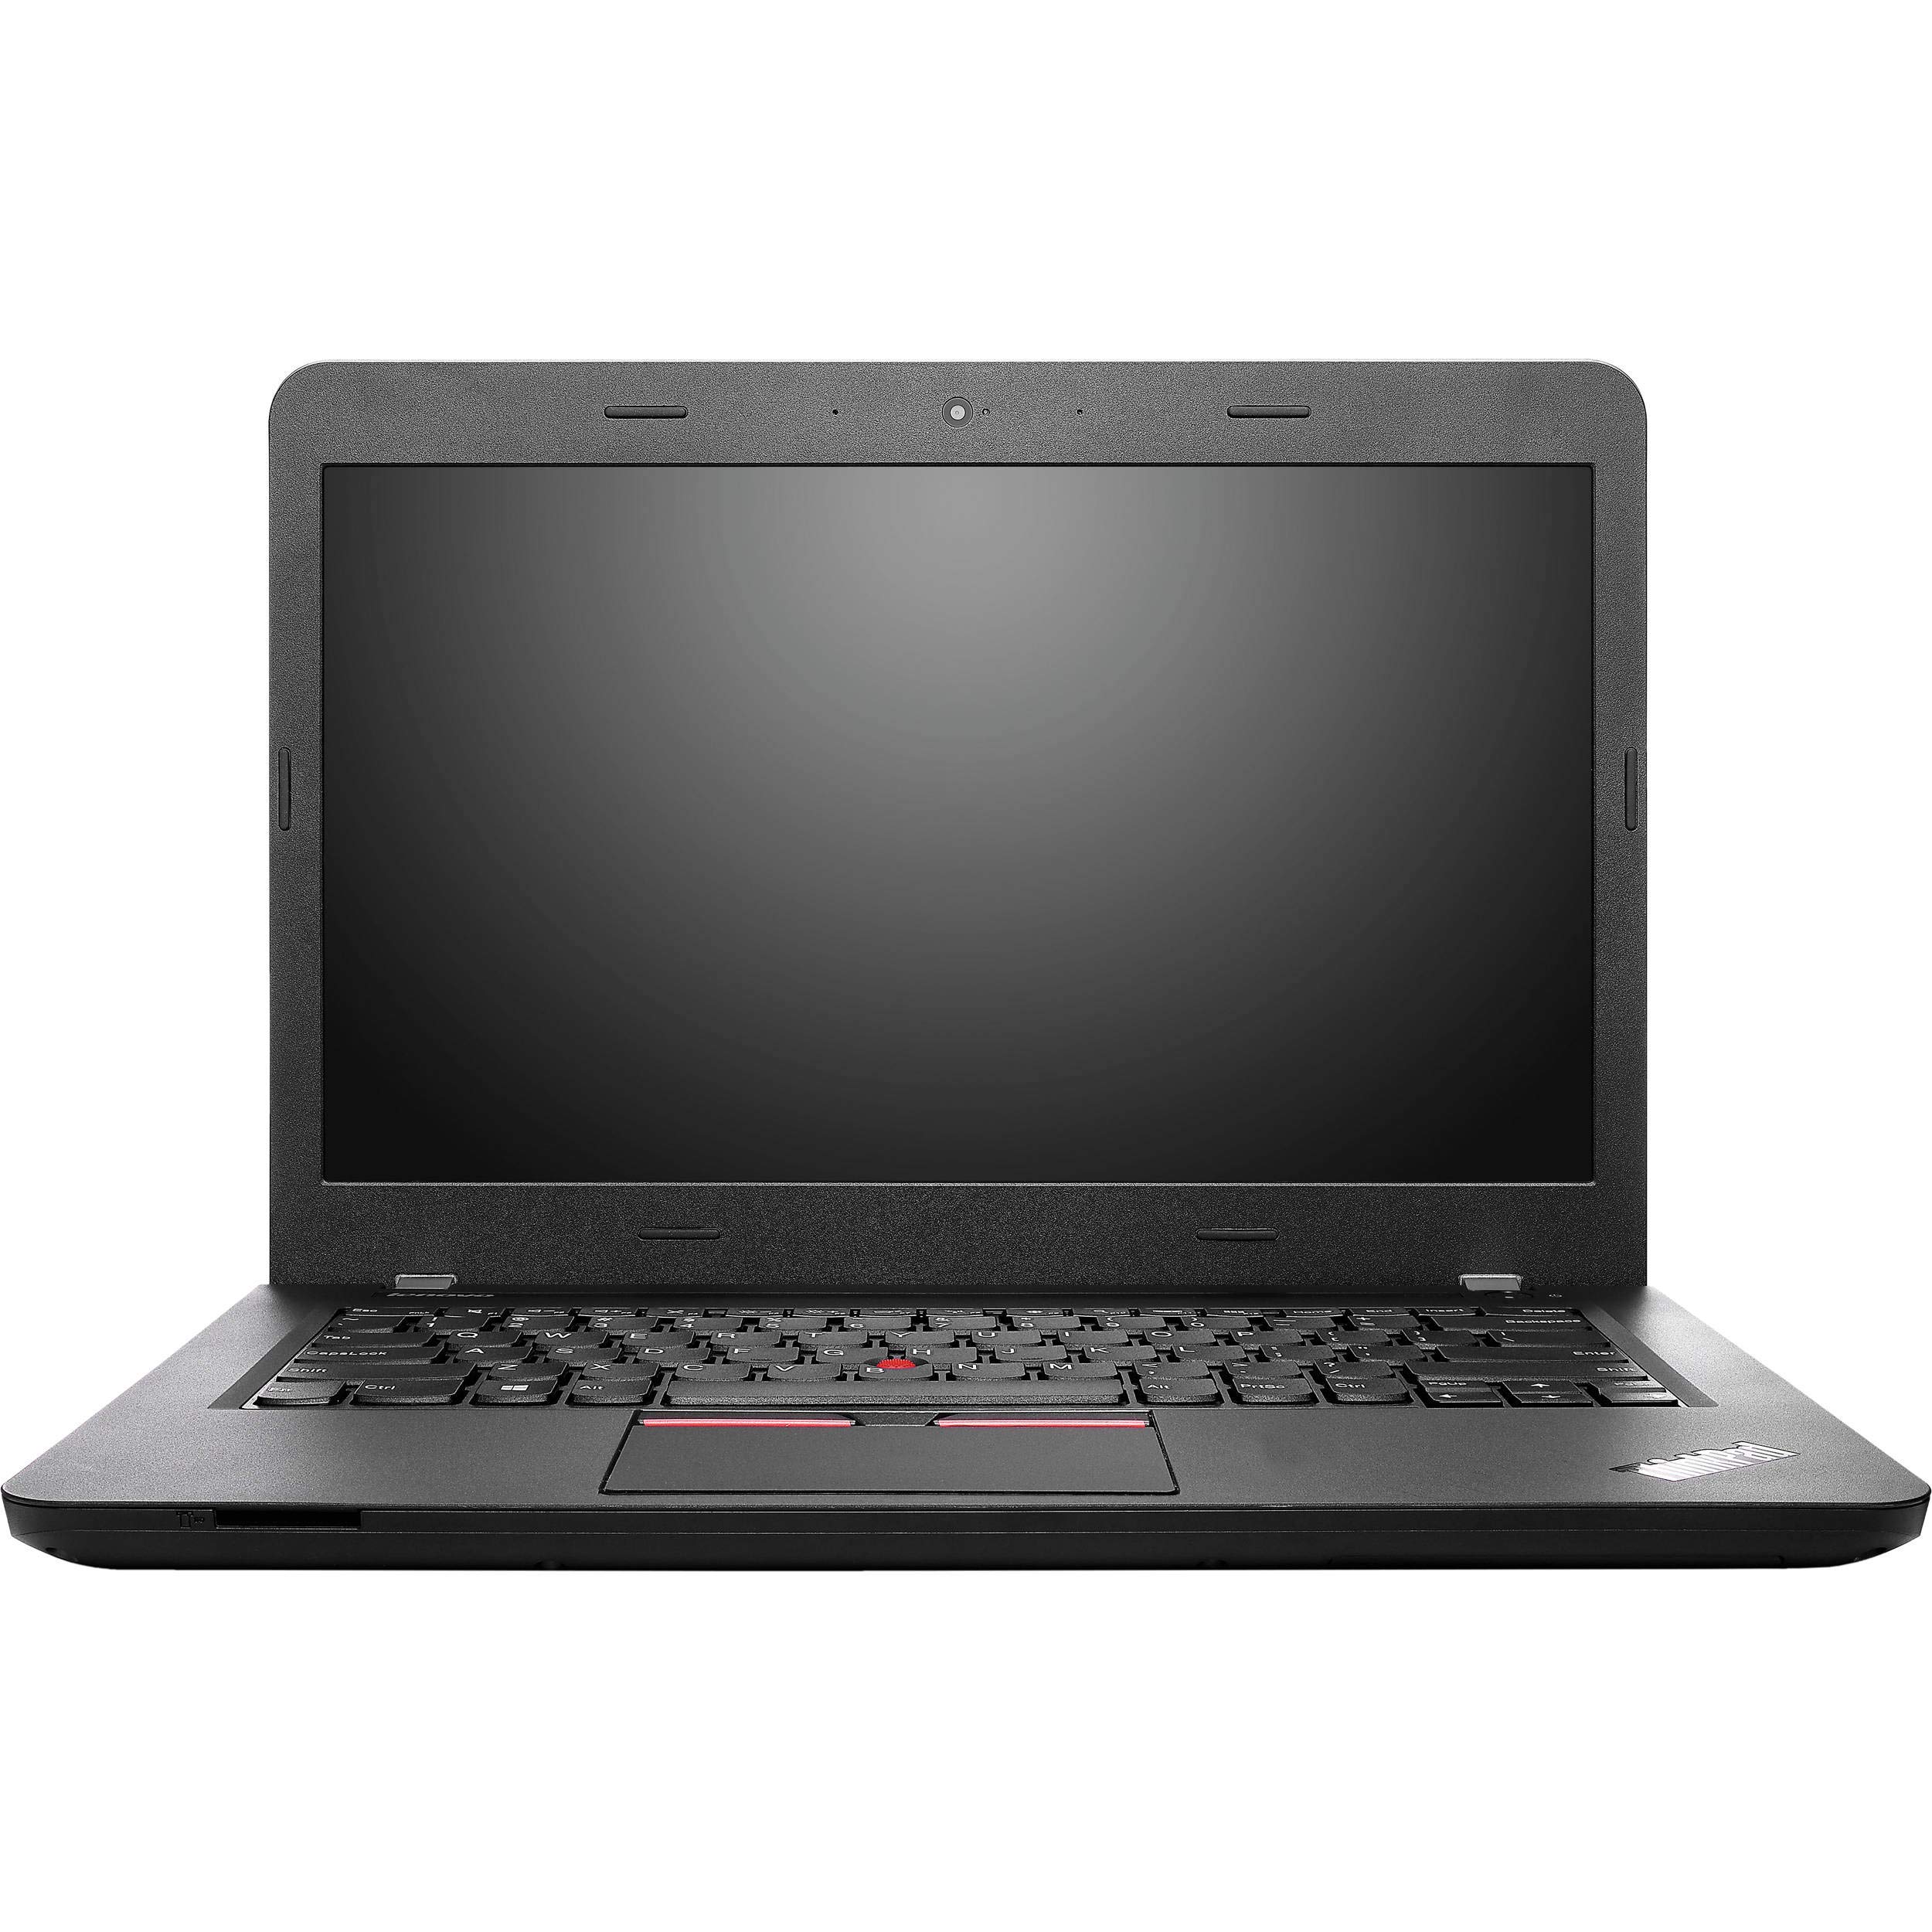  Lenovo ThinkPad E450  Notebook